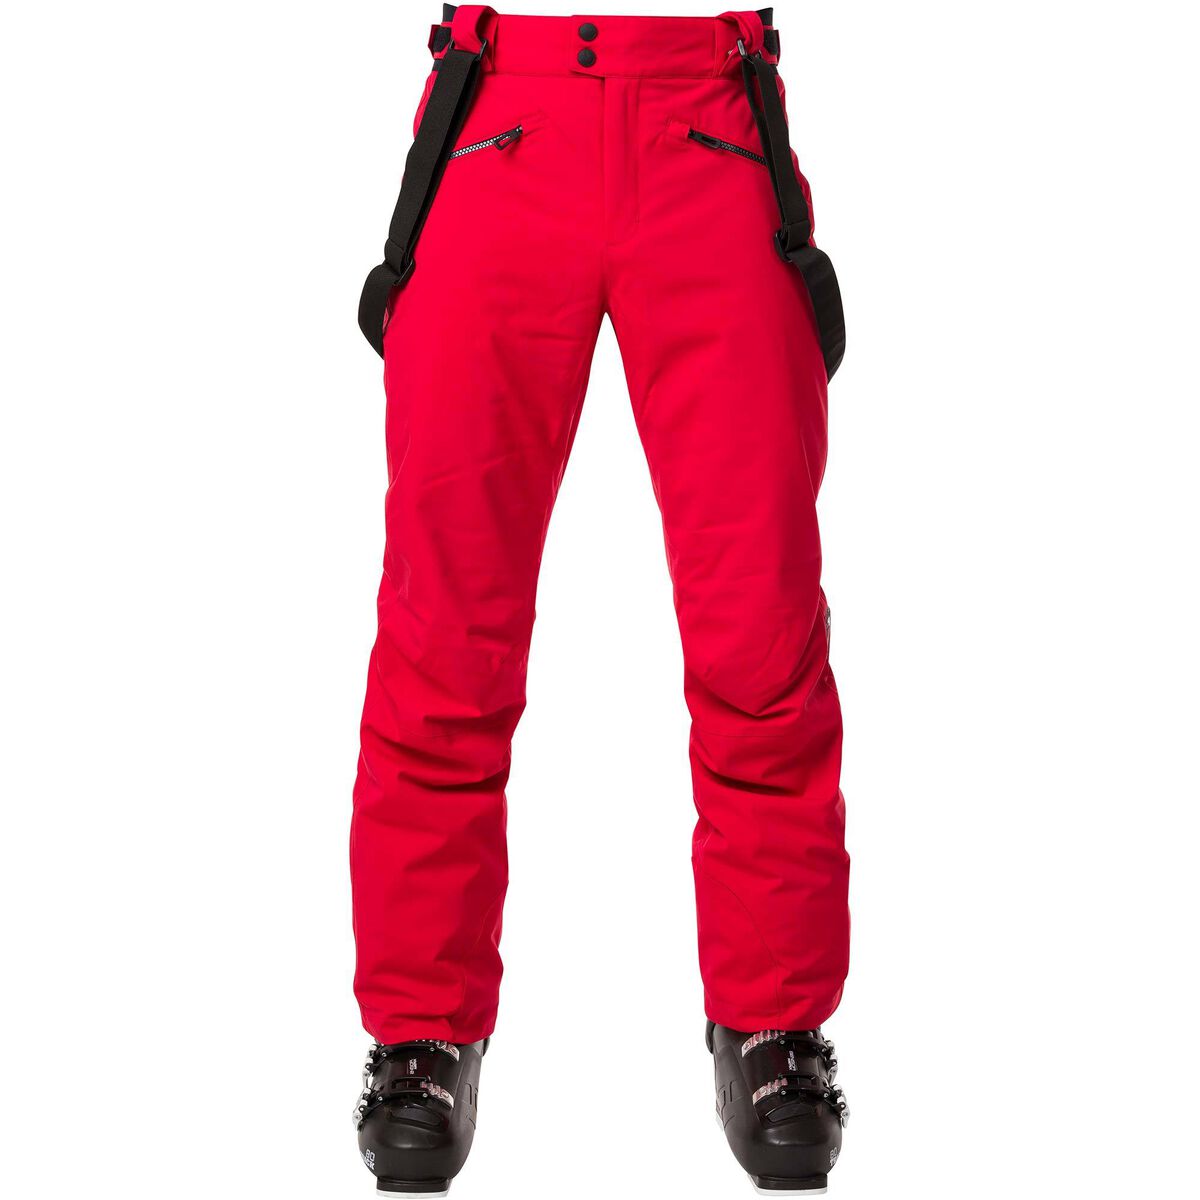 Rossignol Men's Classique Ski Pants Red